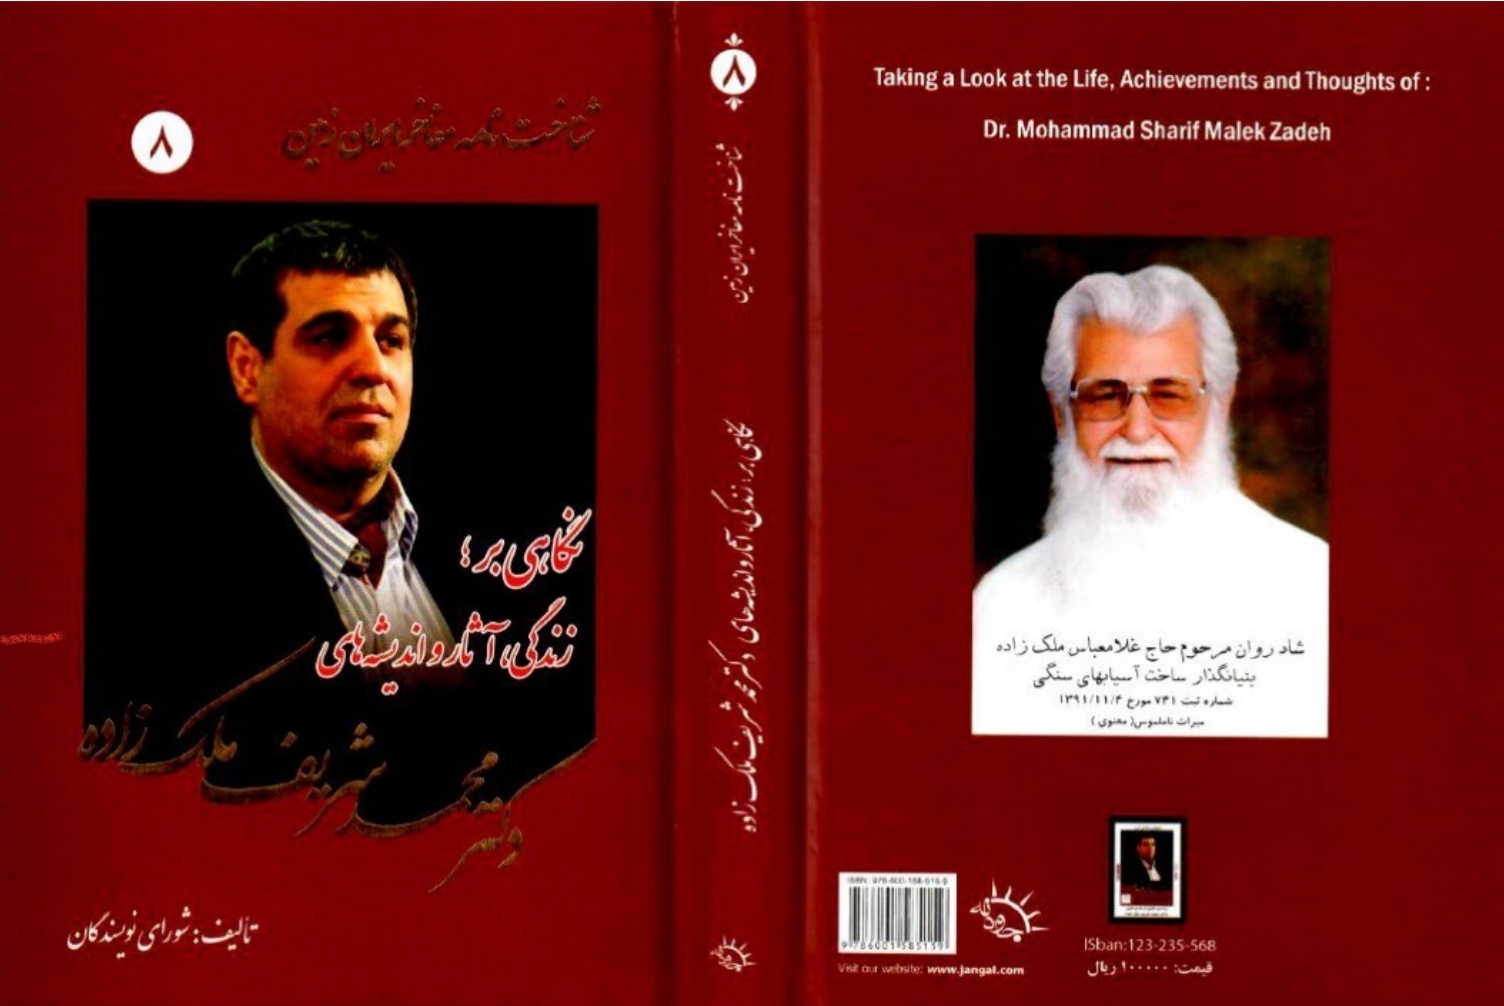 انتشار کتابی با عنوان شناختنامه مفاخر ایران زمین